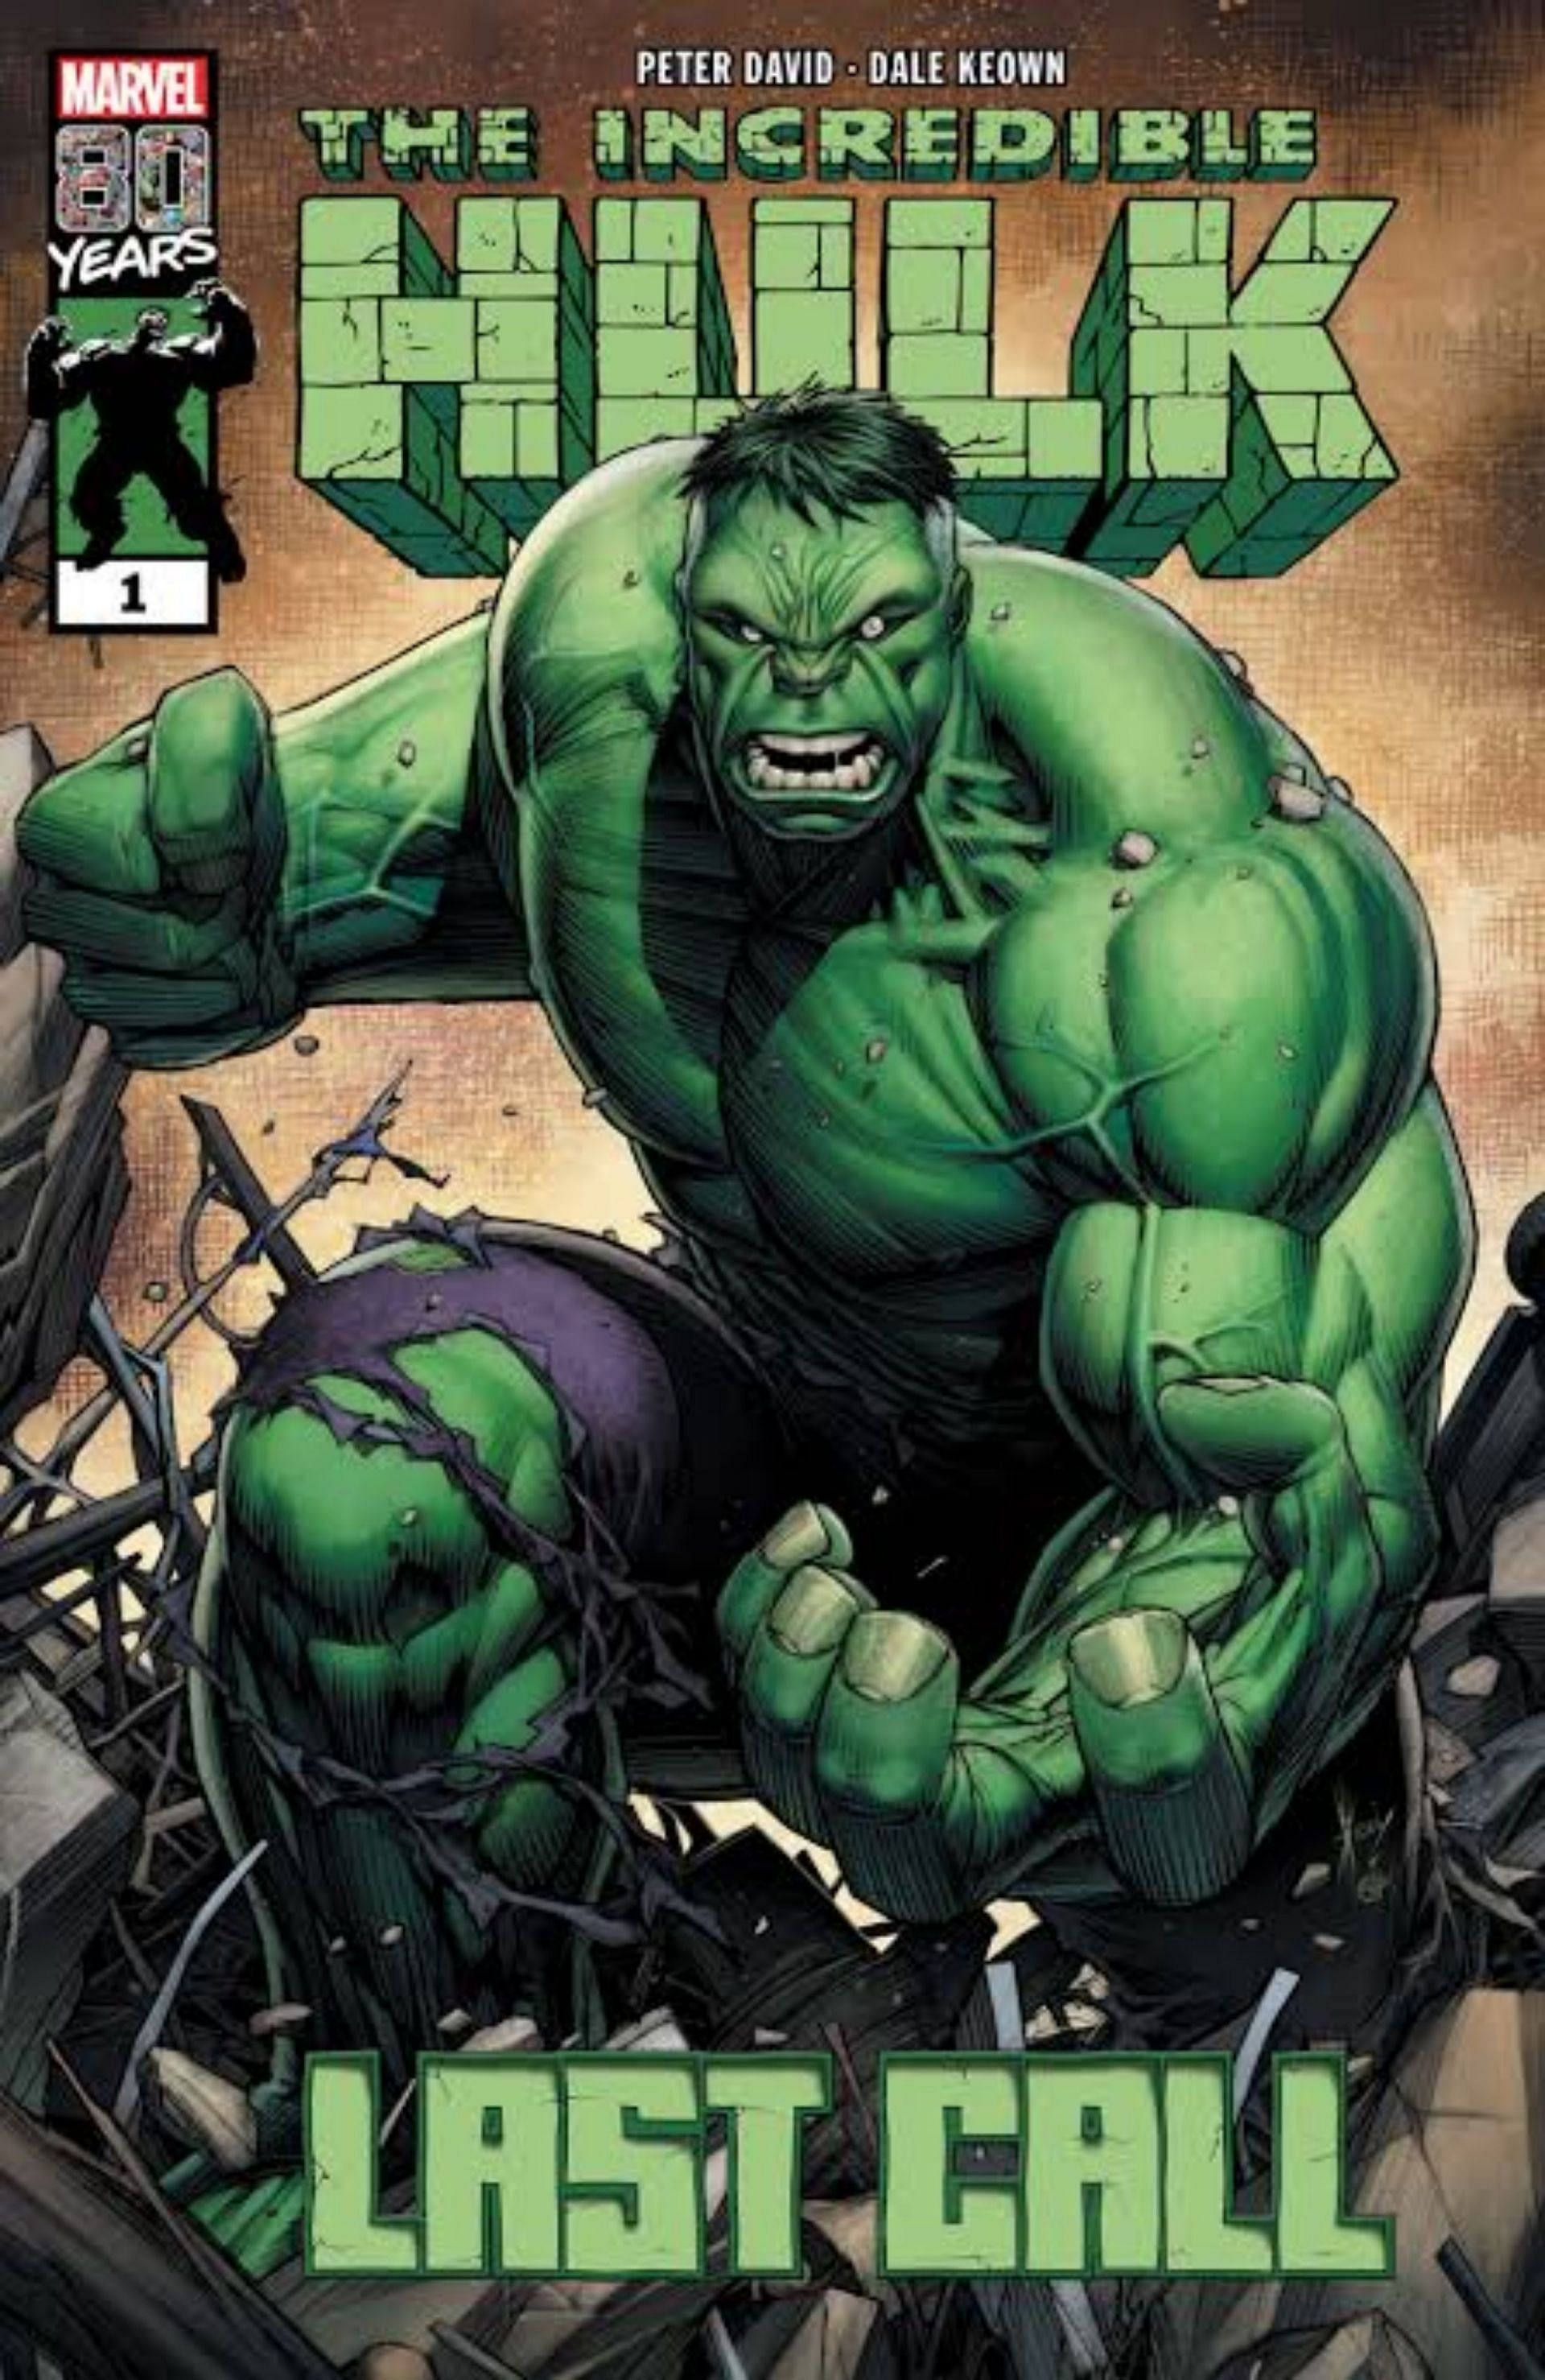 The Incredible Hulk (Image via Marvel Comics)